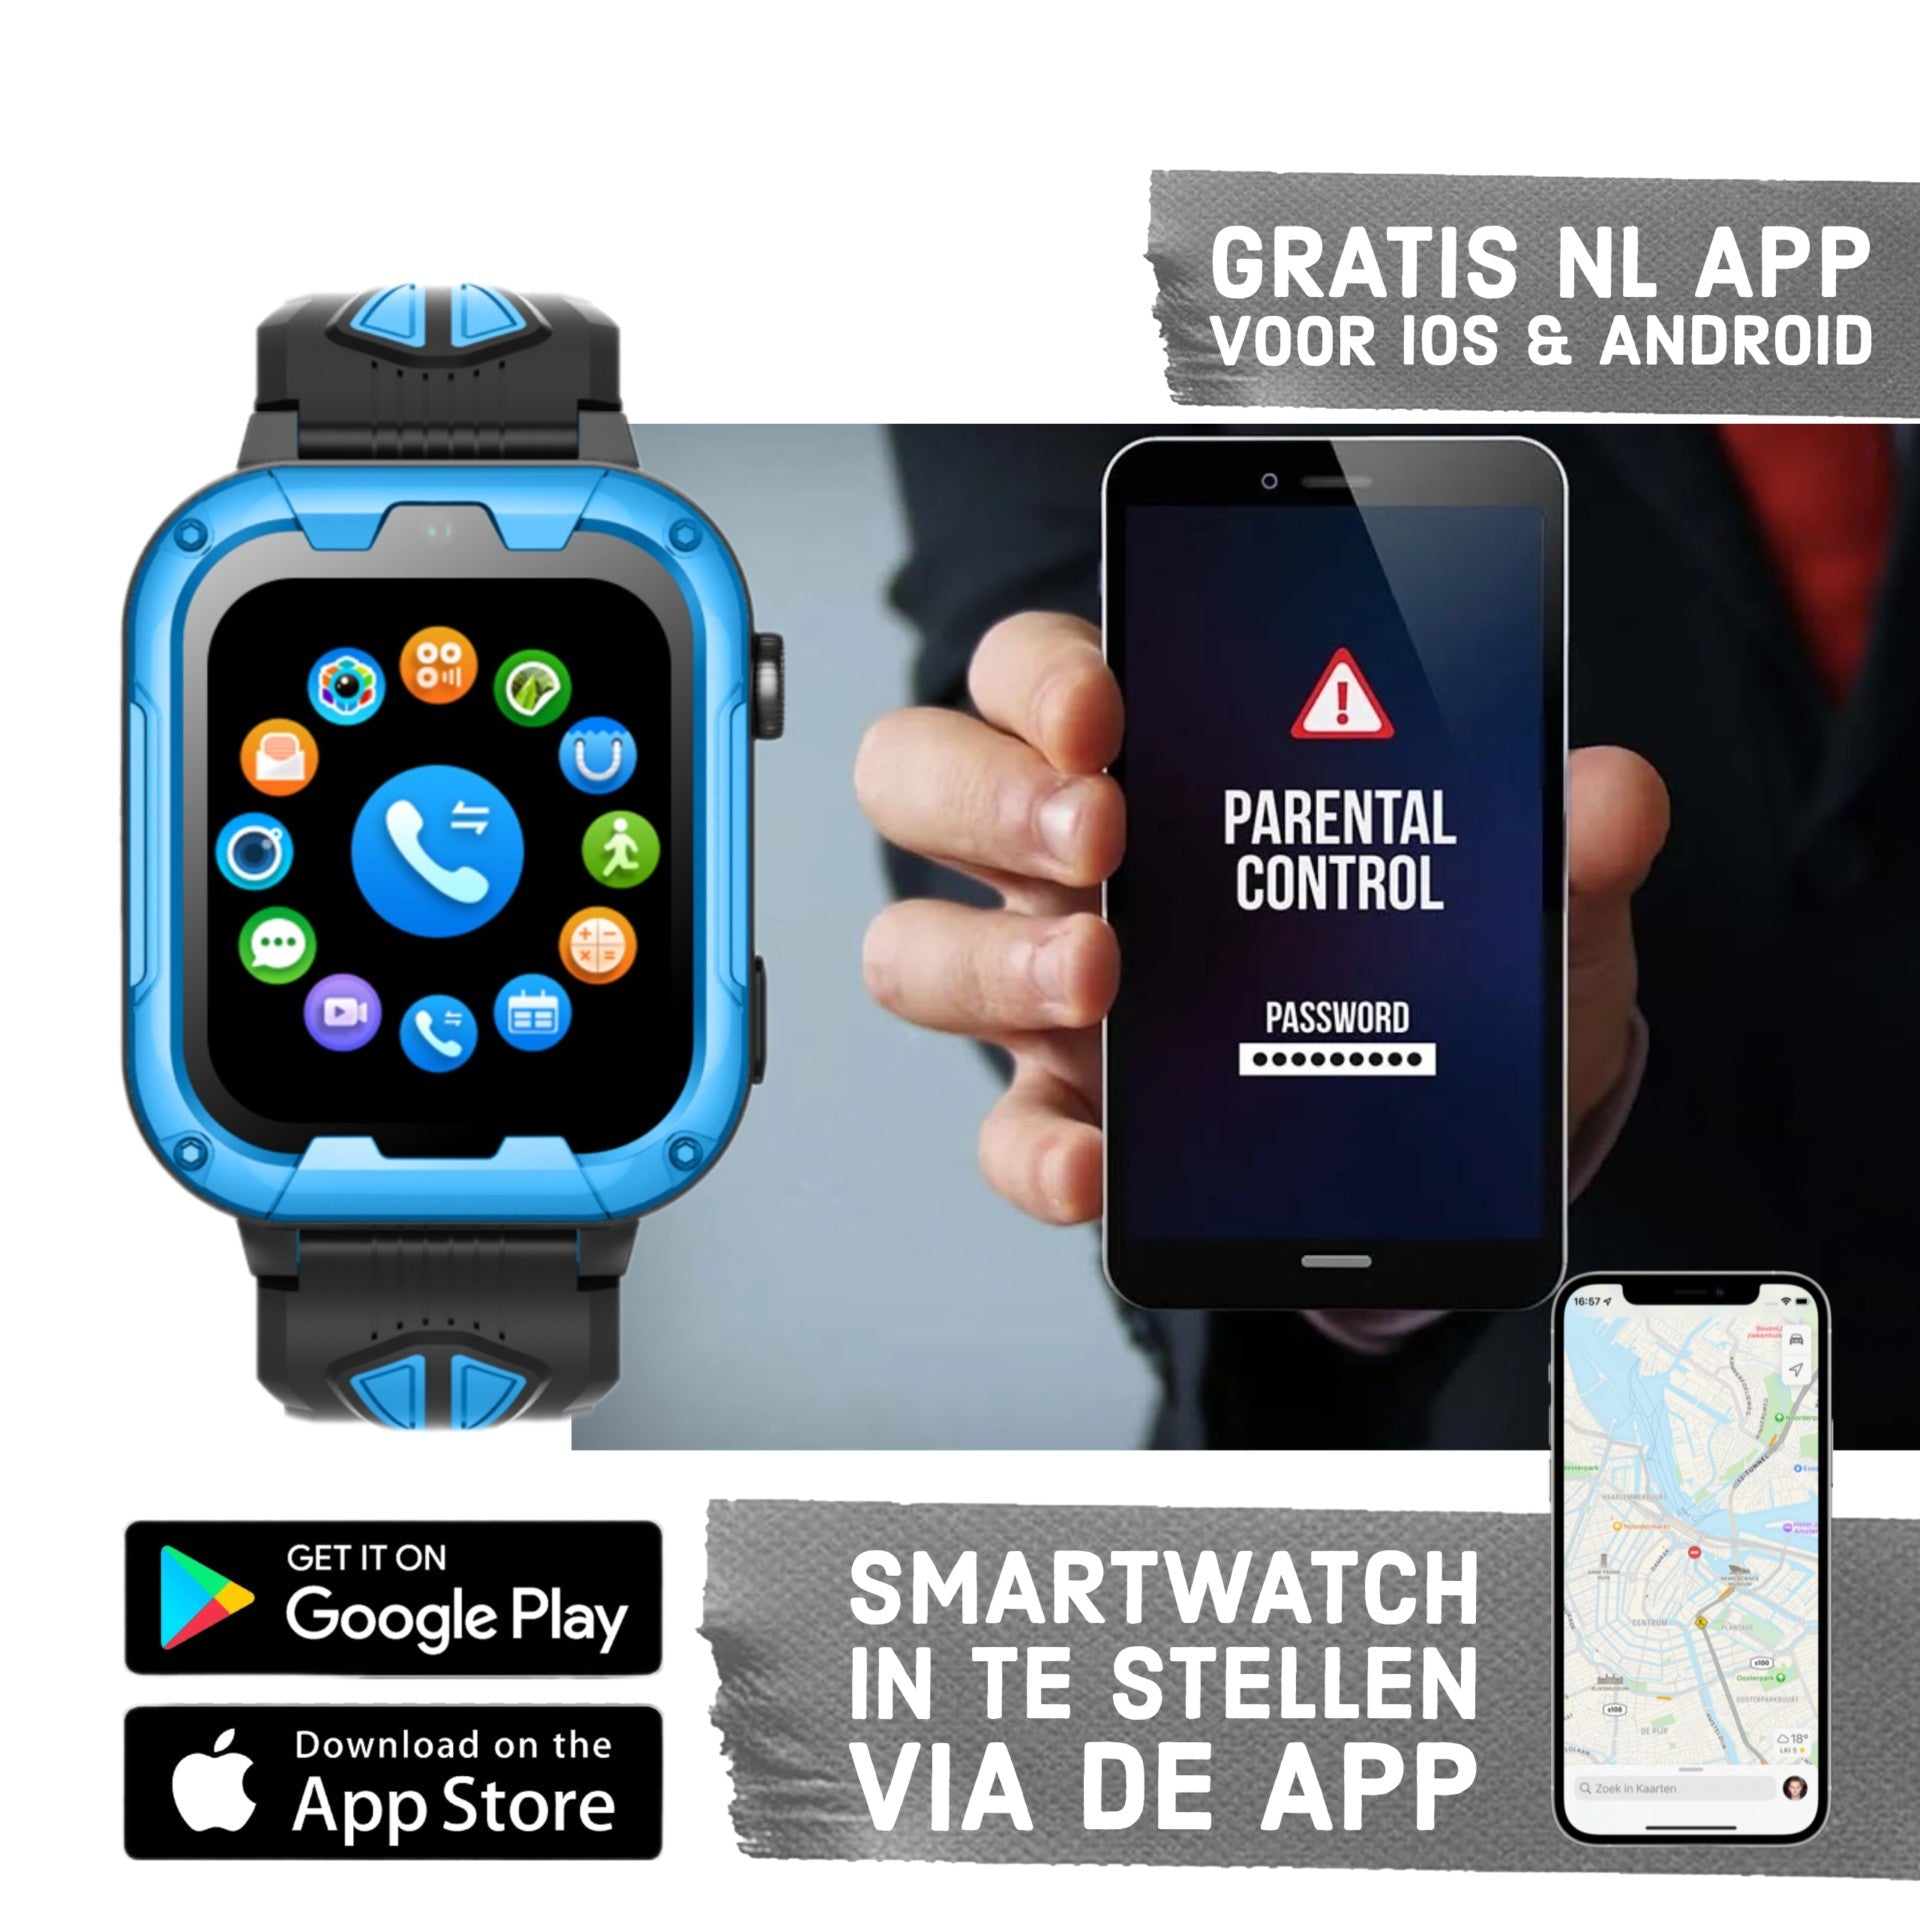 GPS Smartwatch WB40